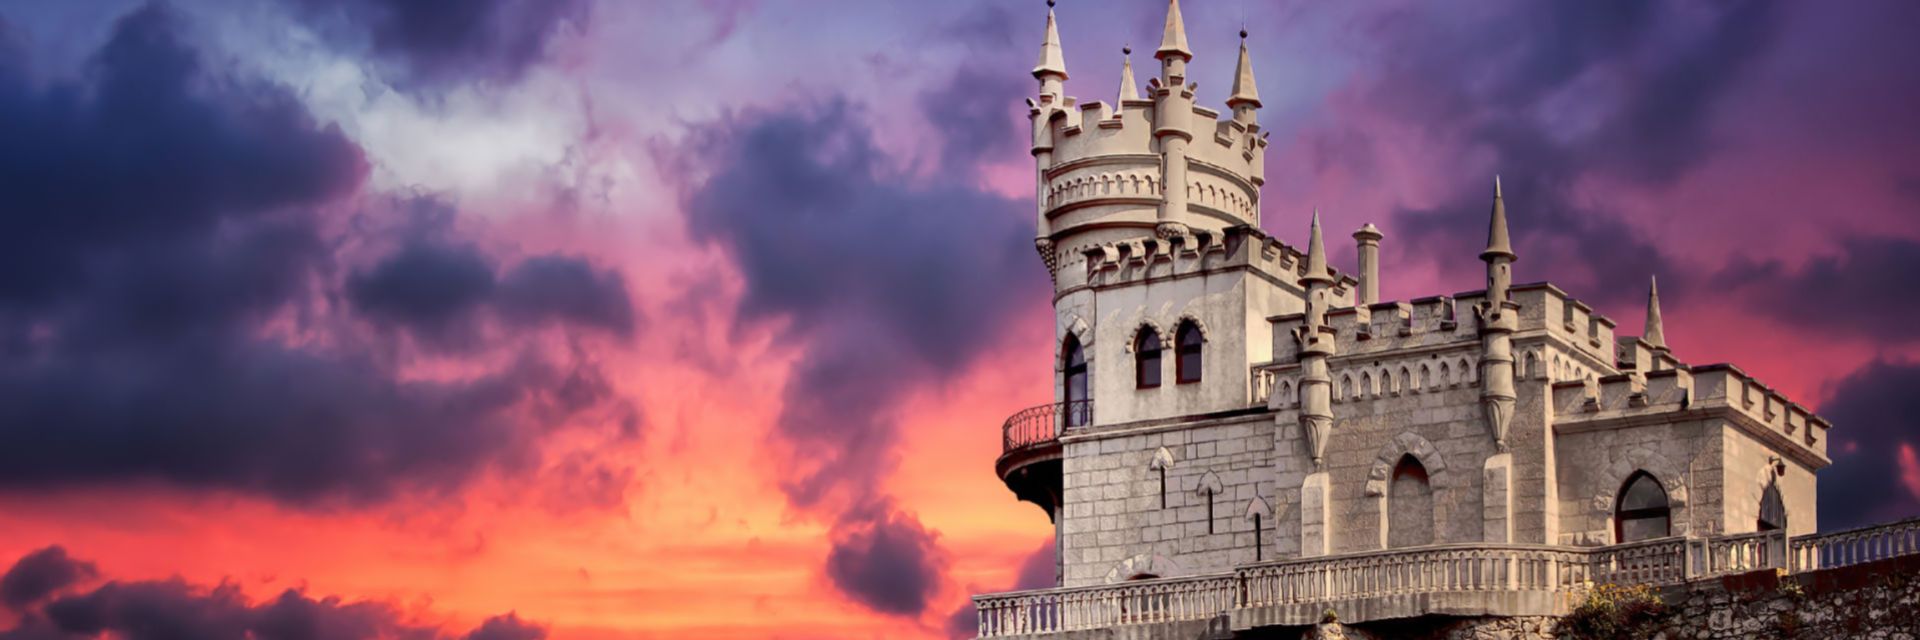 Кримски готически замък с драматична история